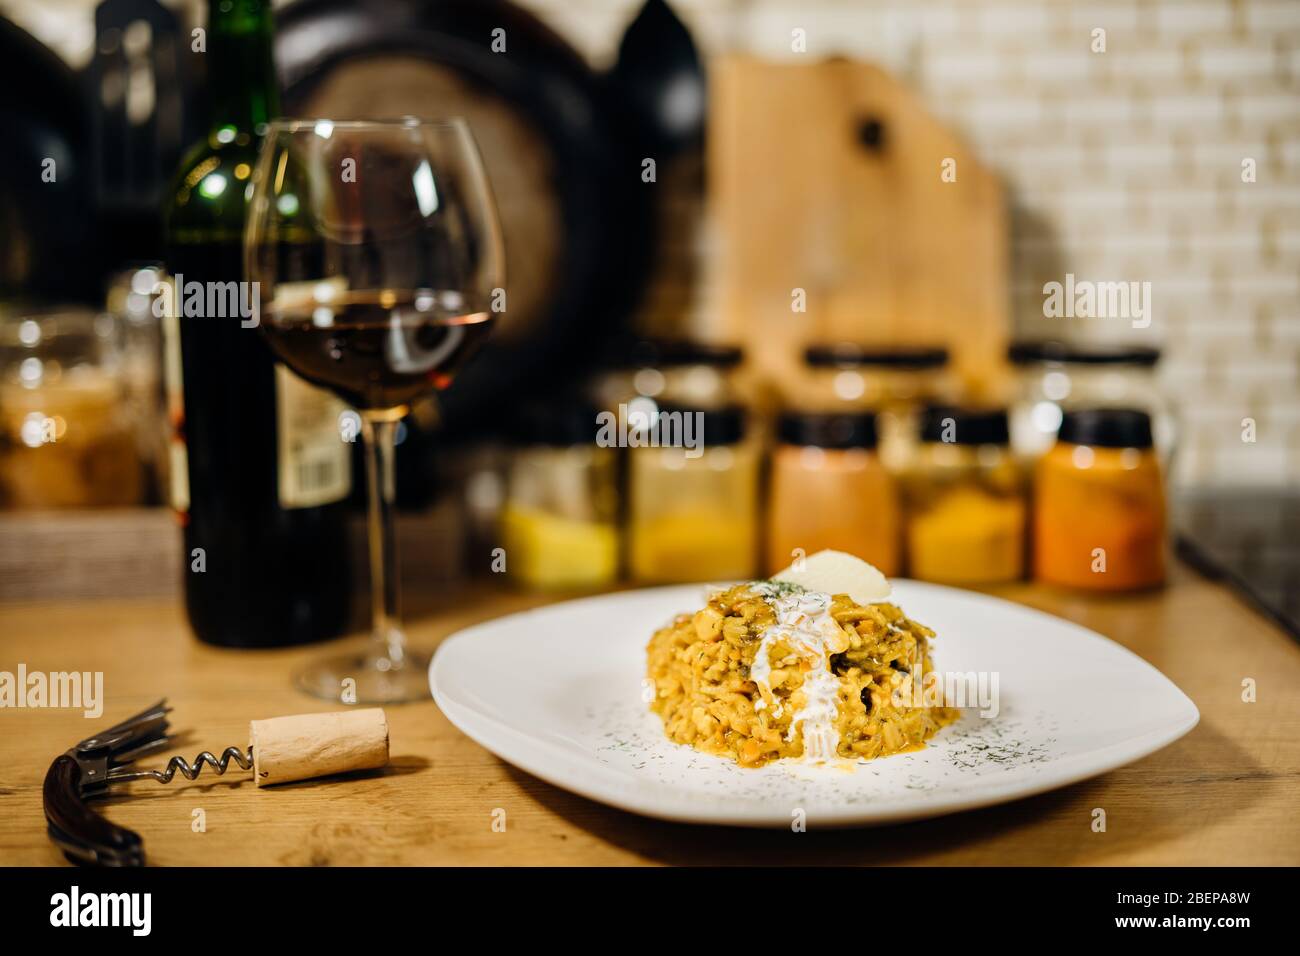 Risotto curcuma giallo con piatto di funghi porcini selvatici servito con vino rosso. Riso allo zafferano con formaggio parmigiano. Ricette tradizionali italiane con vino Foto Stock